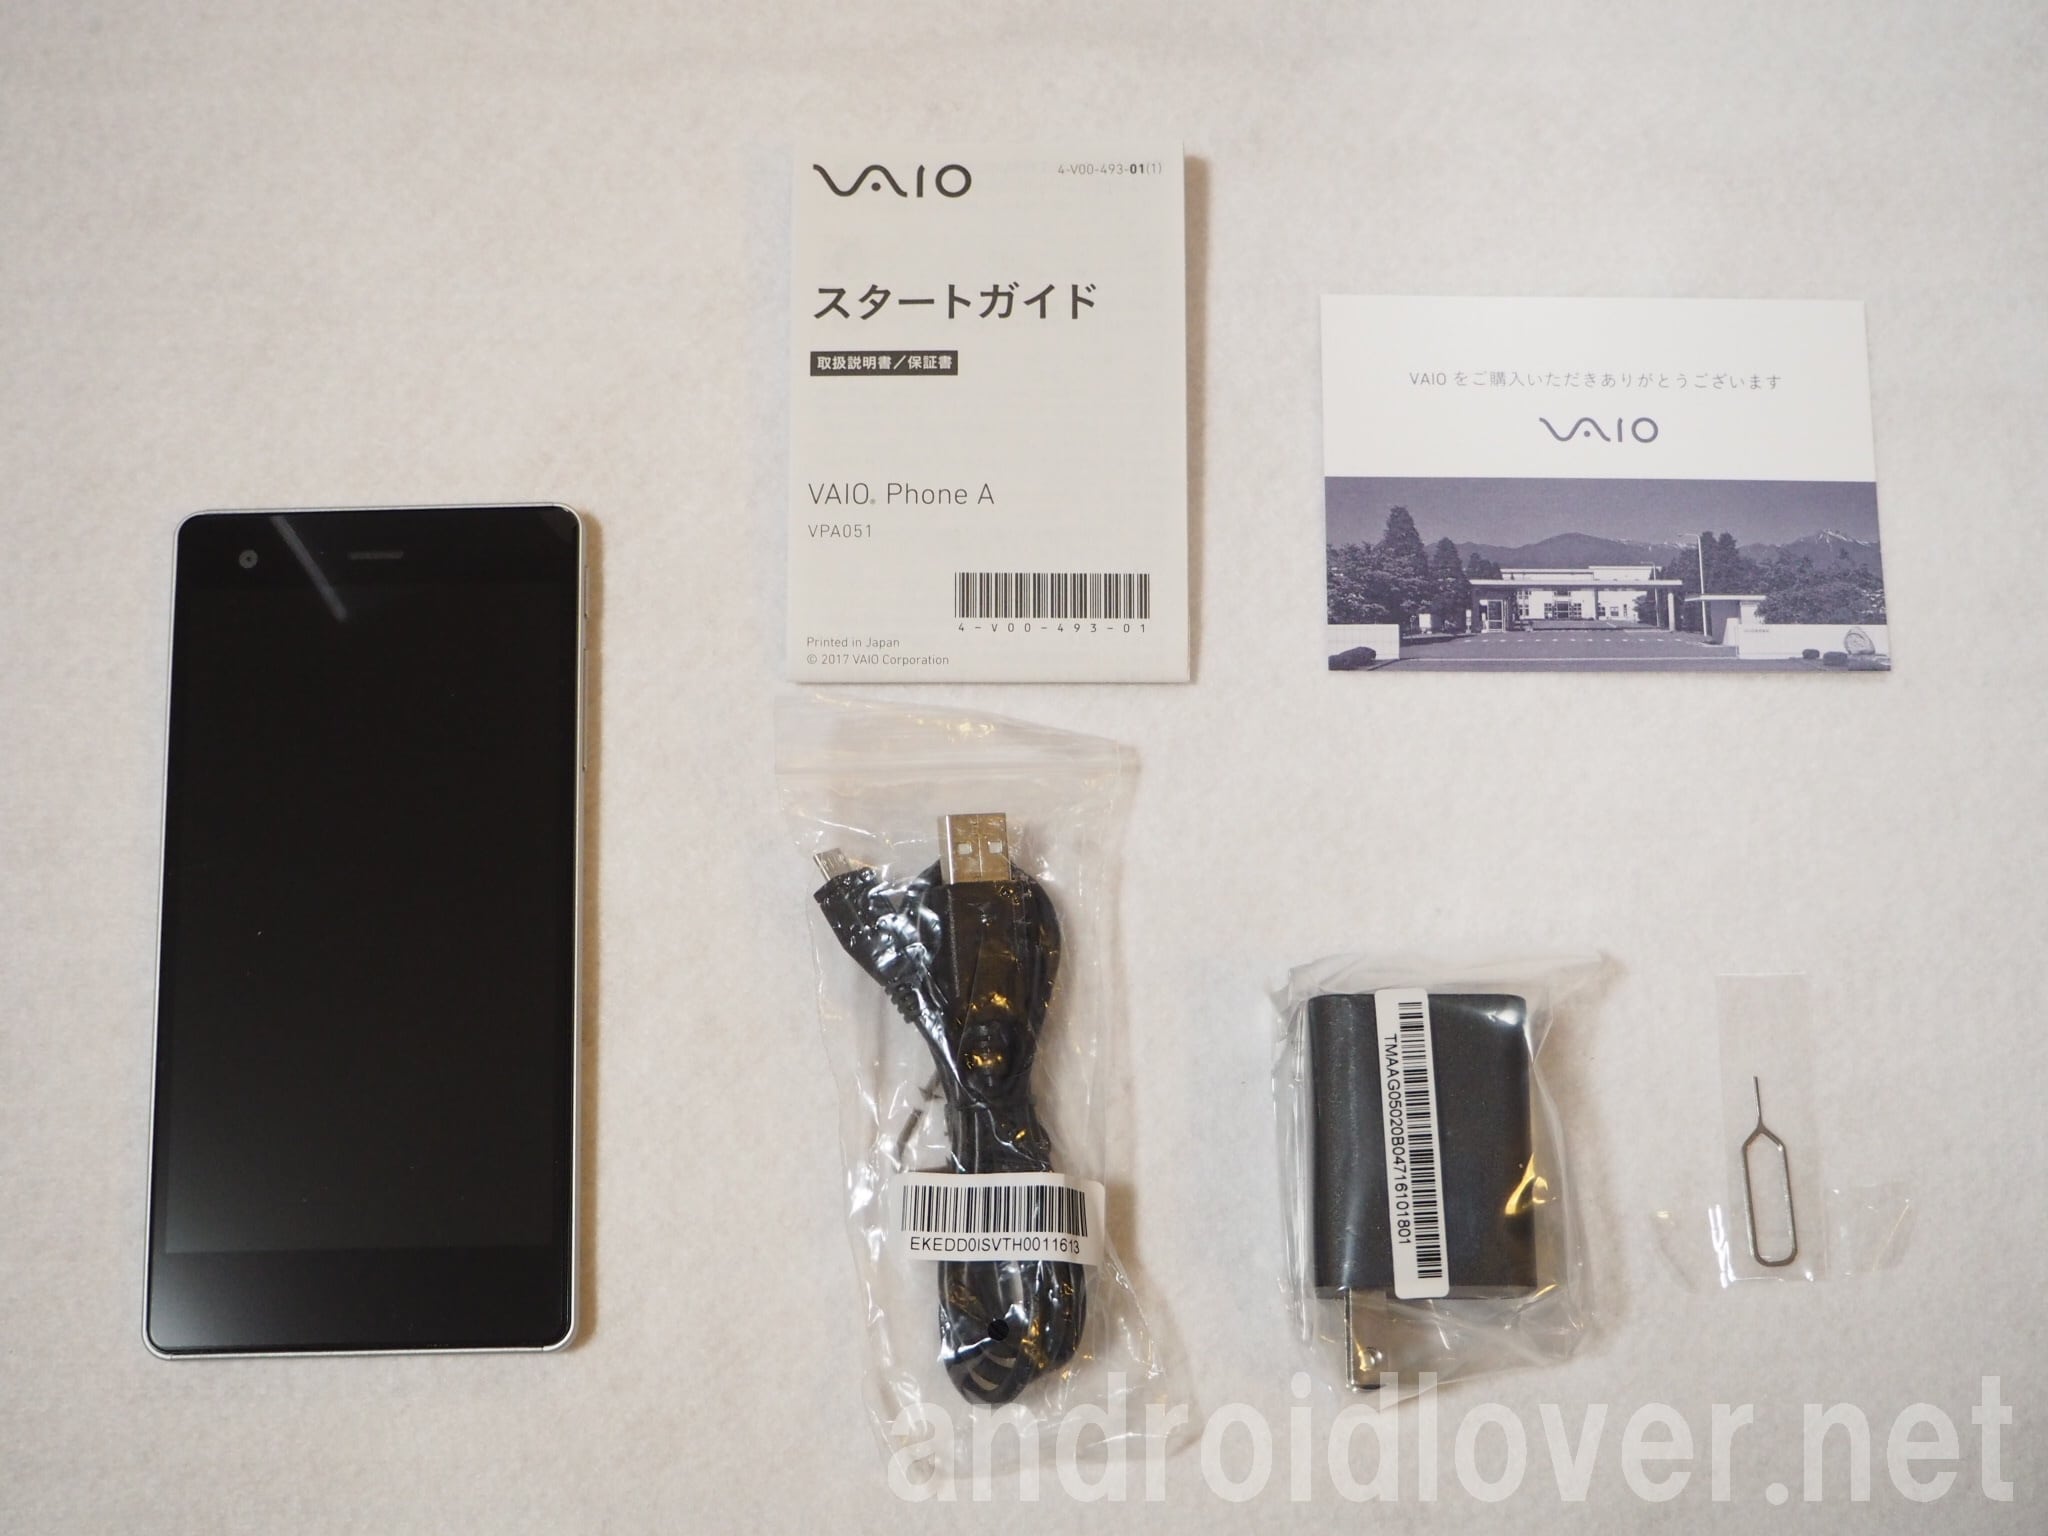 スマートフォン/携帯電話 スマートフォン本体 VAIO Phone A購入レビューとスペック、価格まとめ。Android OS搭載 